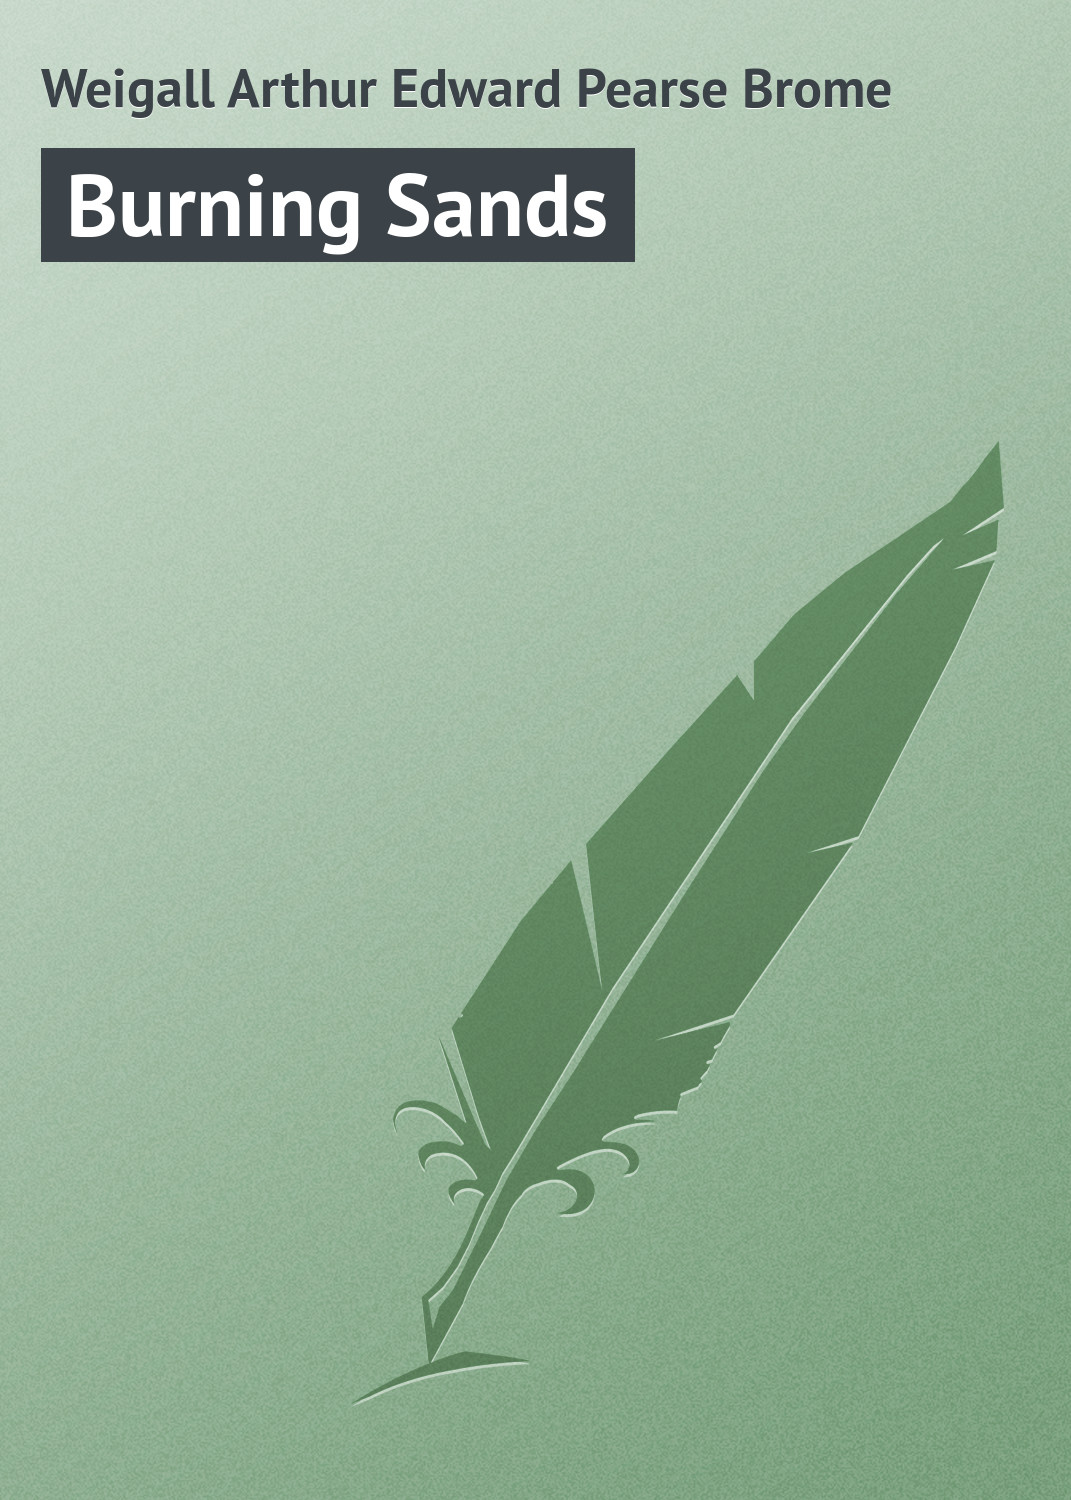 Книга Burning Sands из серии , созданная Arthur Weigall, может относится к жанру Иностранные языки, Зарубежная классика, Зарубежные любовные романы. Стоимость электронной книги Burning Sands с идентификатором 23171579 составляет 5.99 руб.